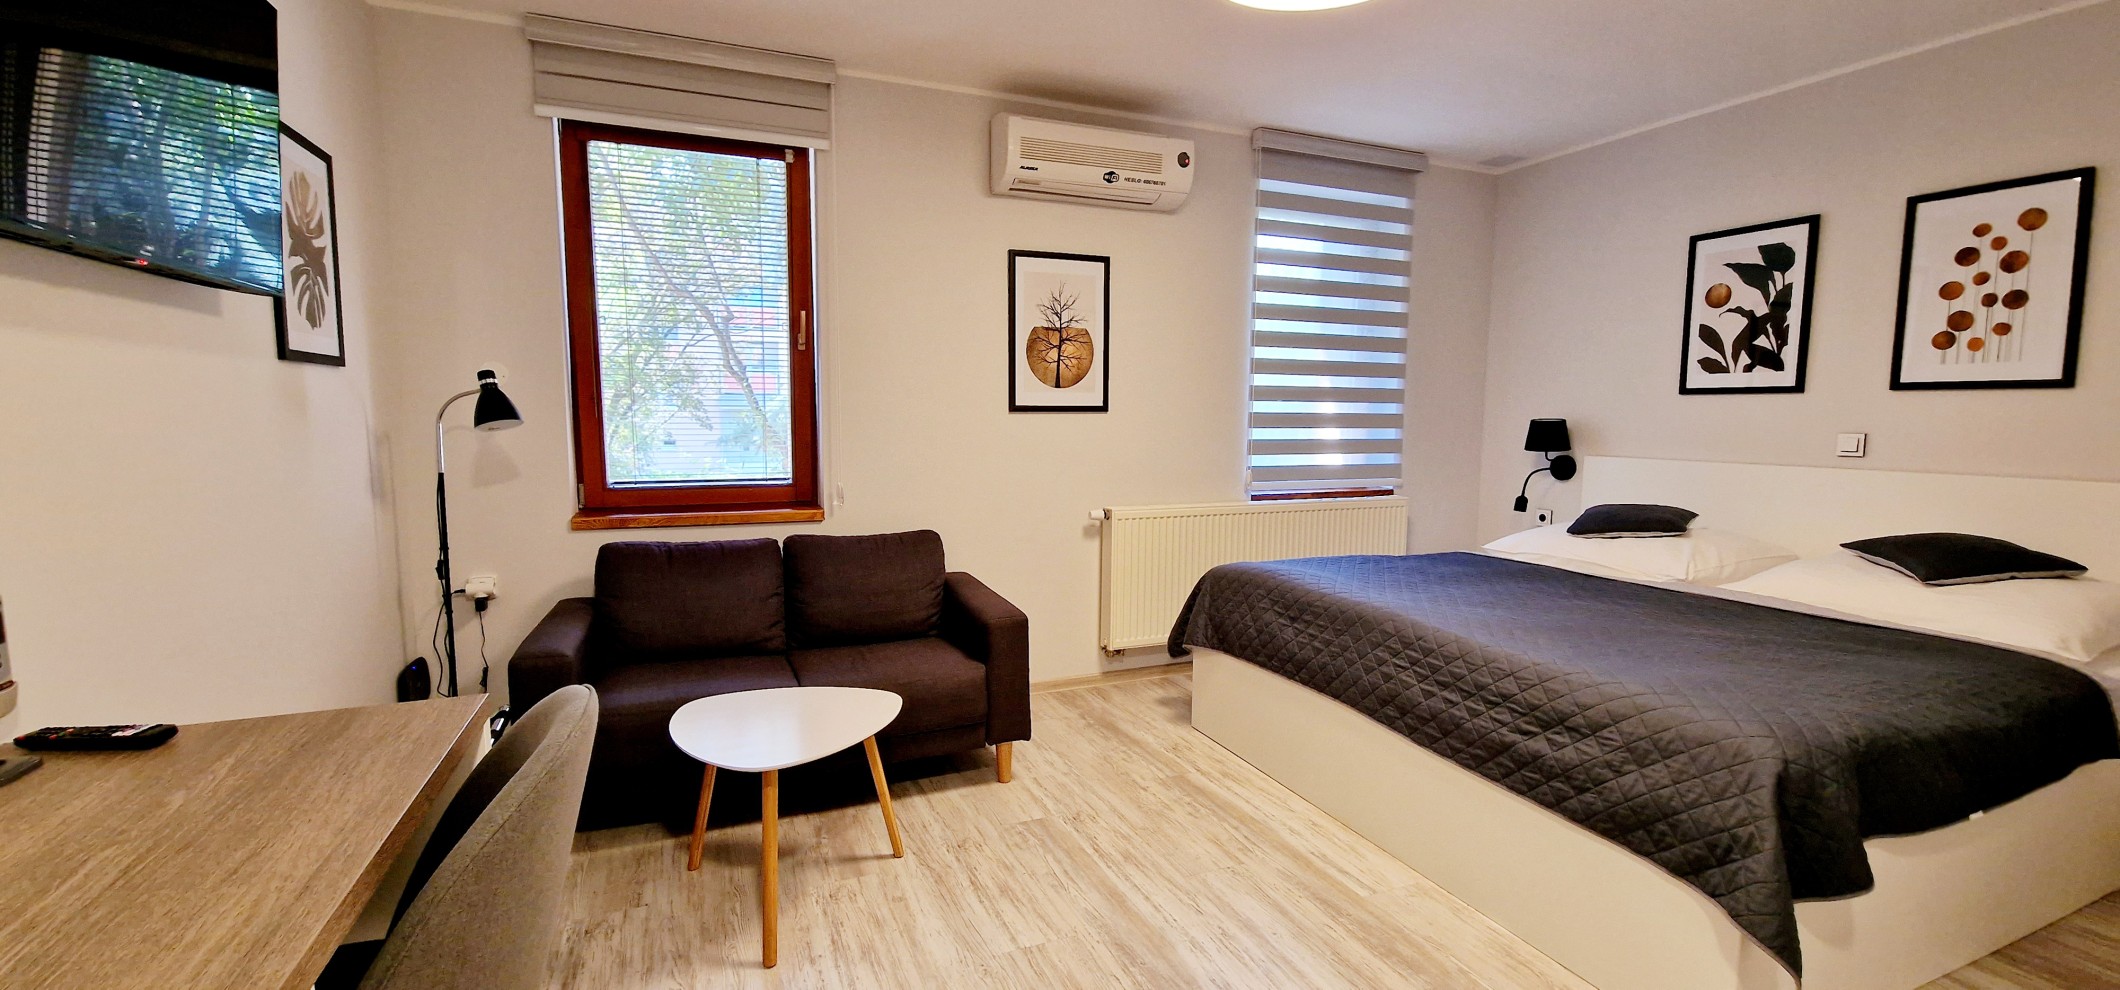 Pobyt ve dvoulůžkových pokojích s možností přistýlky v penzionu v centru Valtic